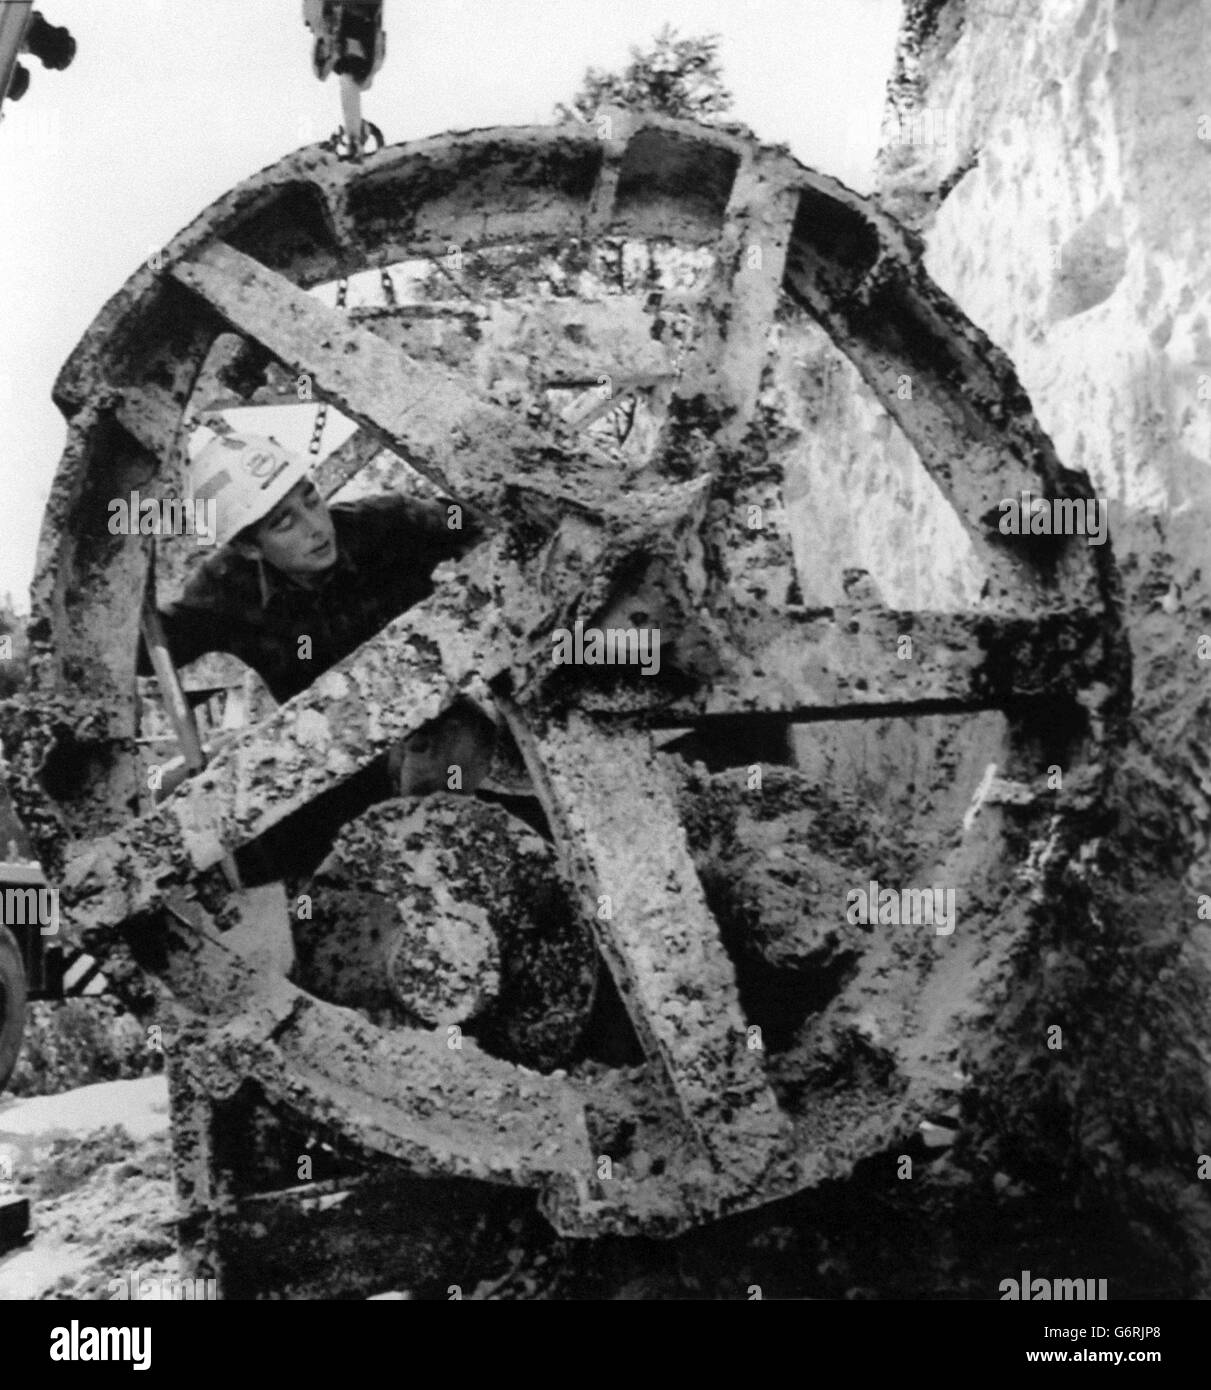 Un ingegnere Eurotunnel ispezionava una macchina per la perforazione di tunnel Whitaker, che è stata messa alla luce a Hythe, Kent. La macchina è stata utilizzata in un progetto nel 1922-23 per scavare un tunnel esplorativo, che è stato successivamente abbandonato quell'anno ed è rimasto nel tunnel fino a quando Eurotunnel non lo ha scavato. Foto Stock